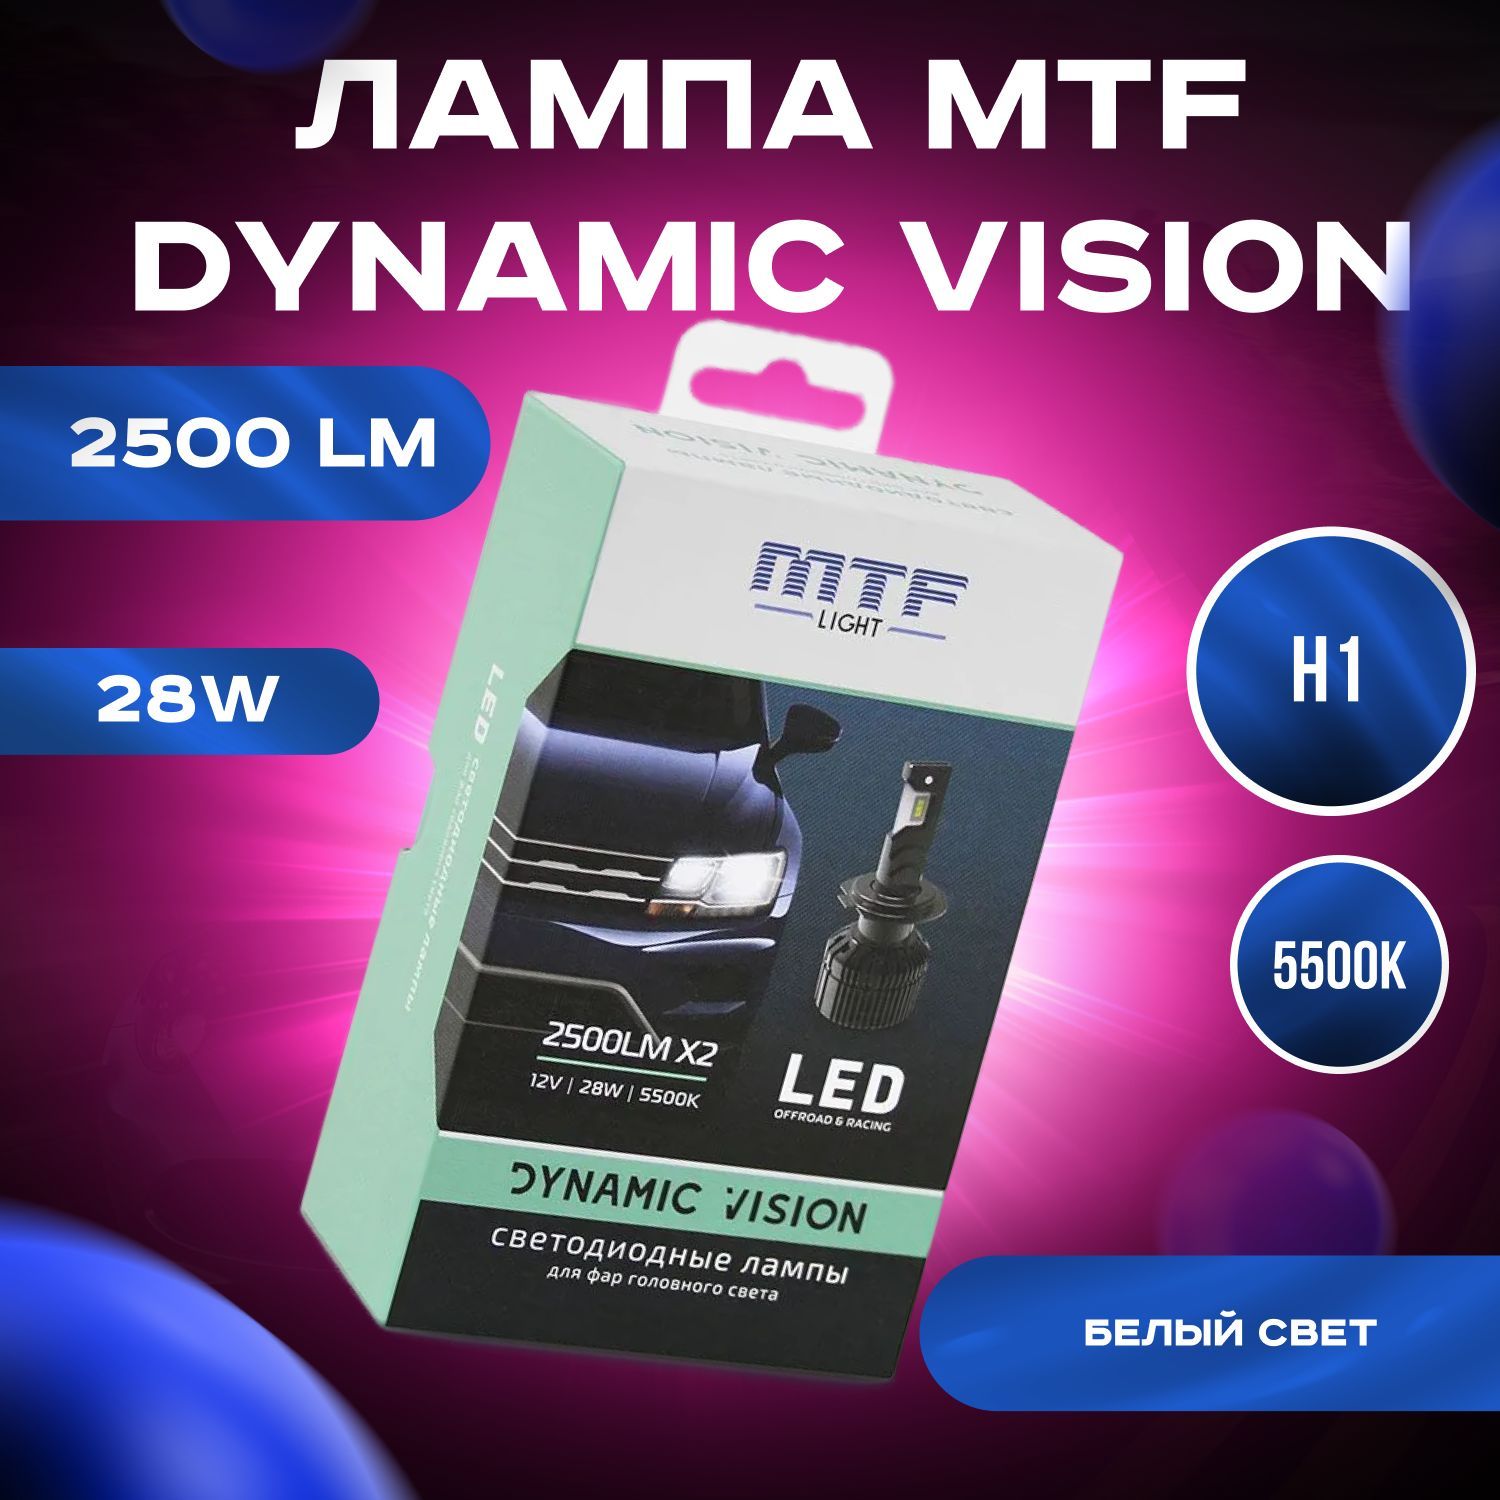 Dynamic vision led